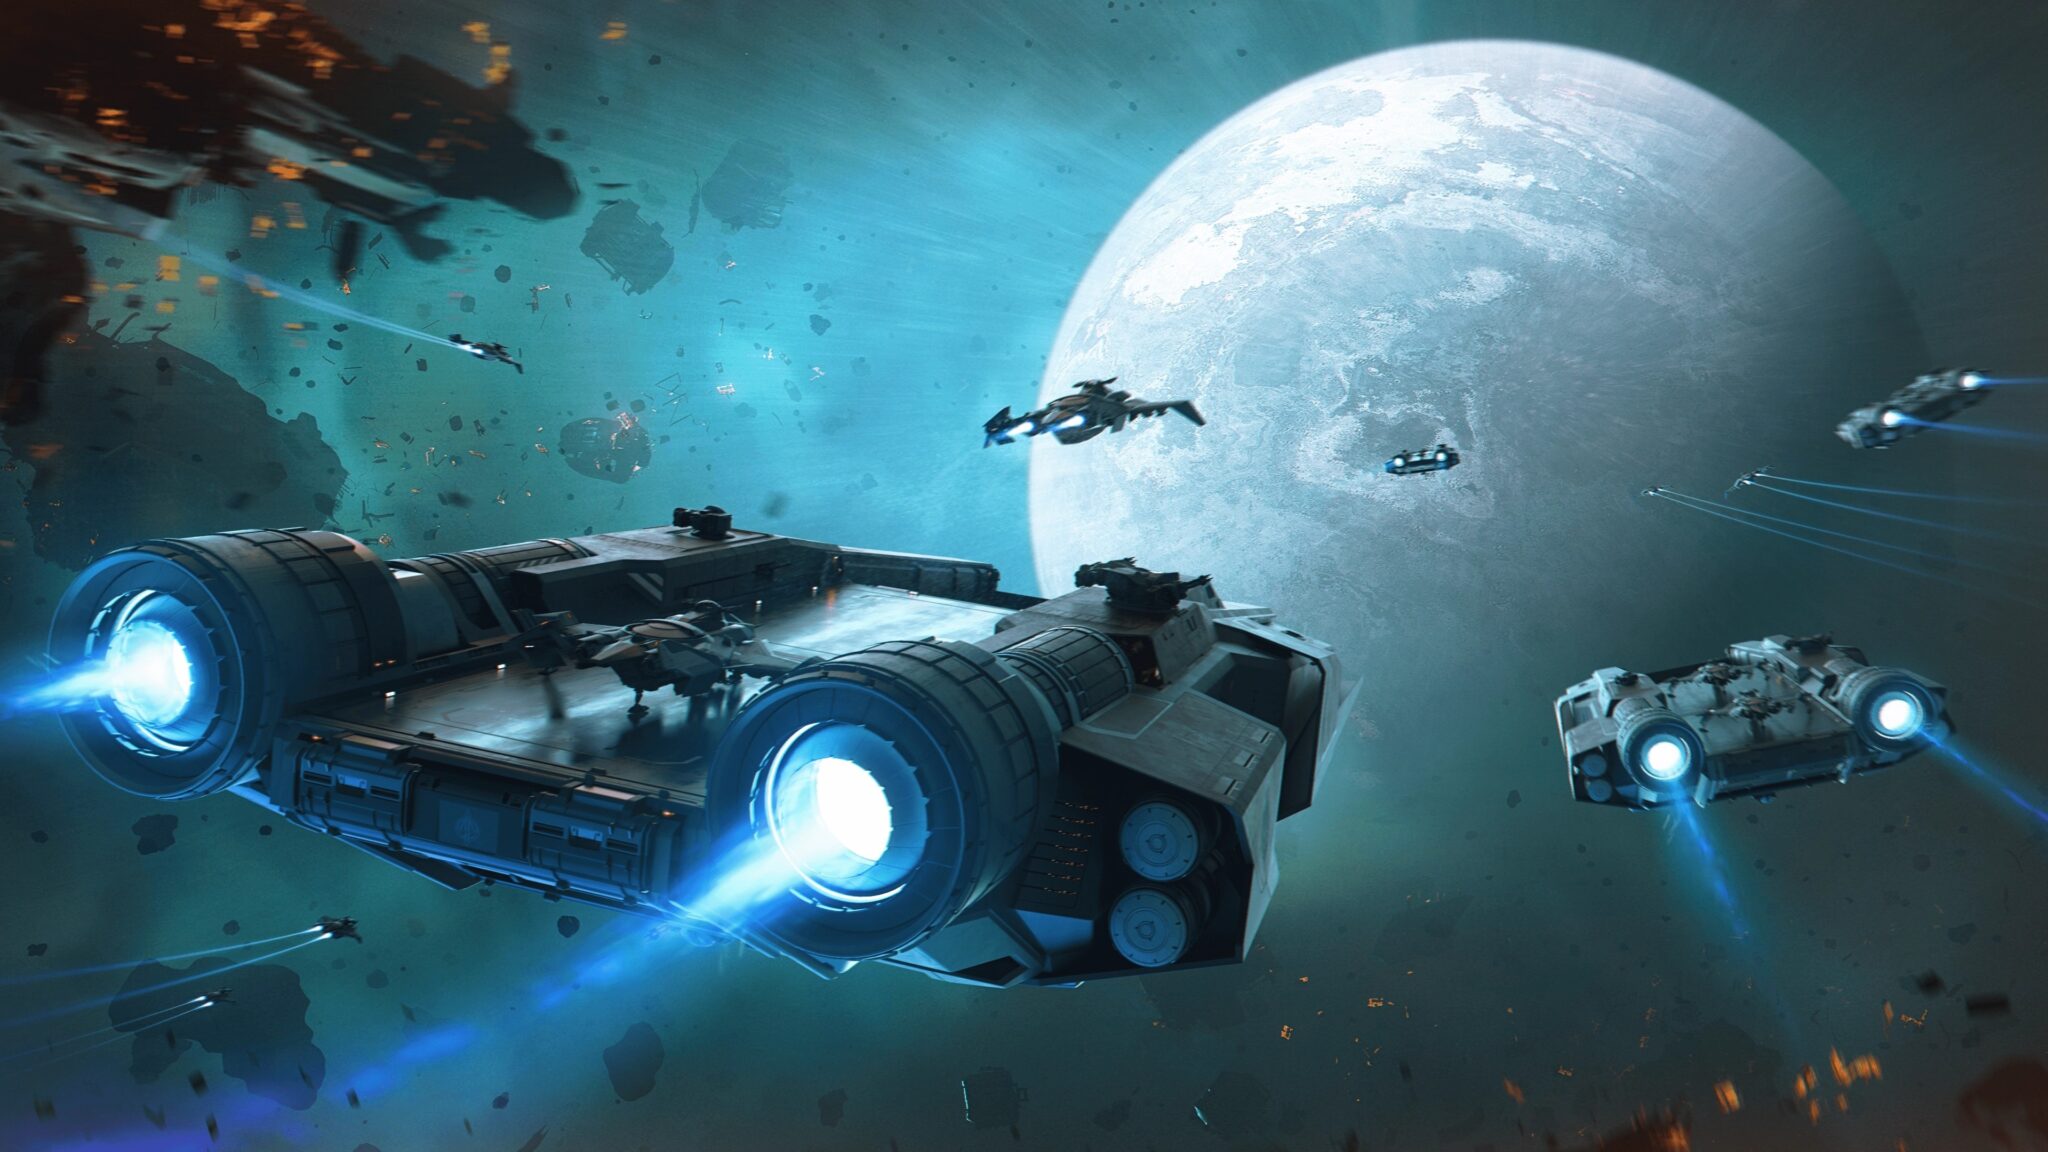 Por supuesto, Cloud Imperium Games aprovechó la ocasión para poner a la venta nuevas naves espaciales en la Citizencon.